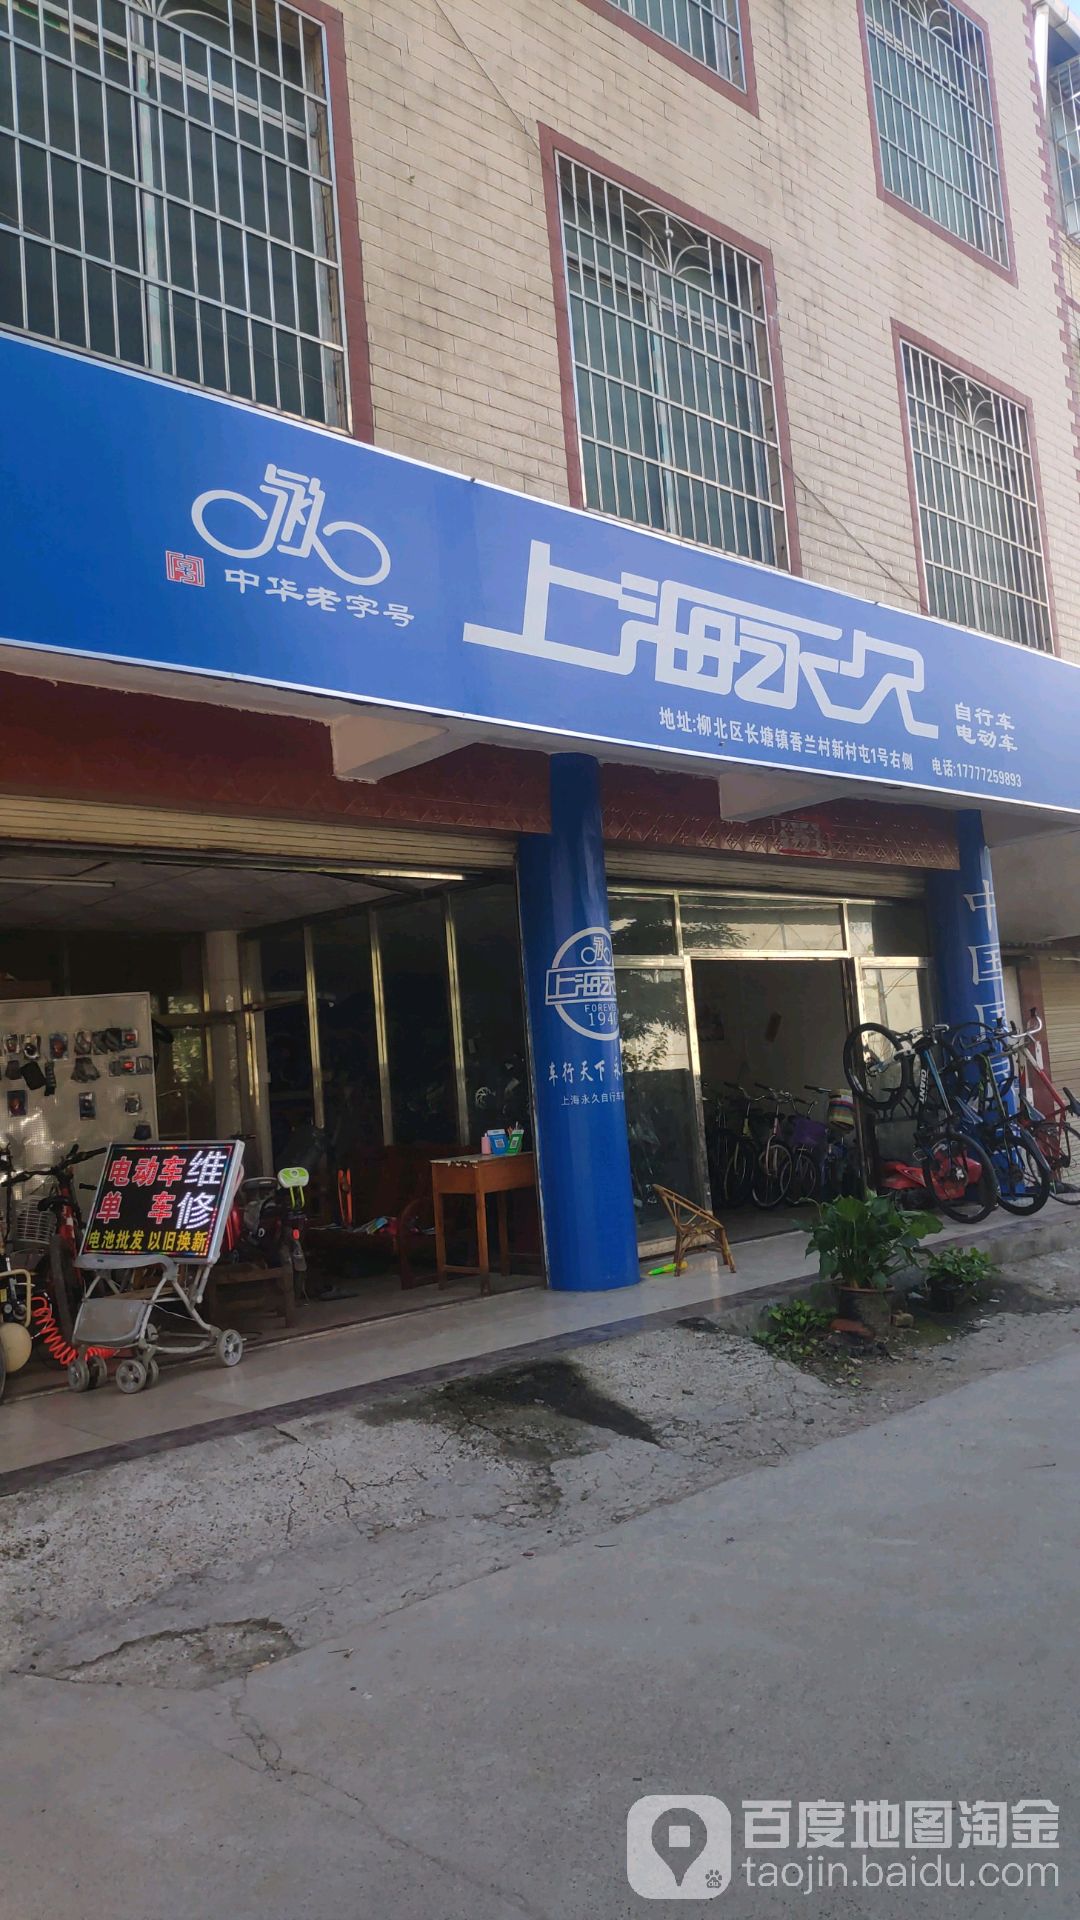 上海永久自行车电车(香兰店)